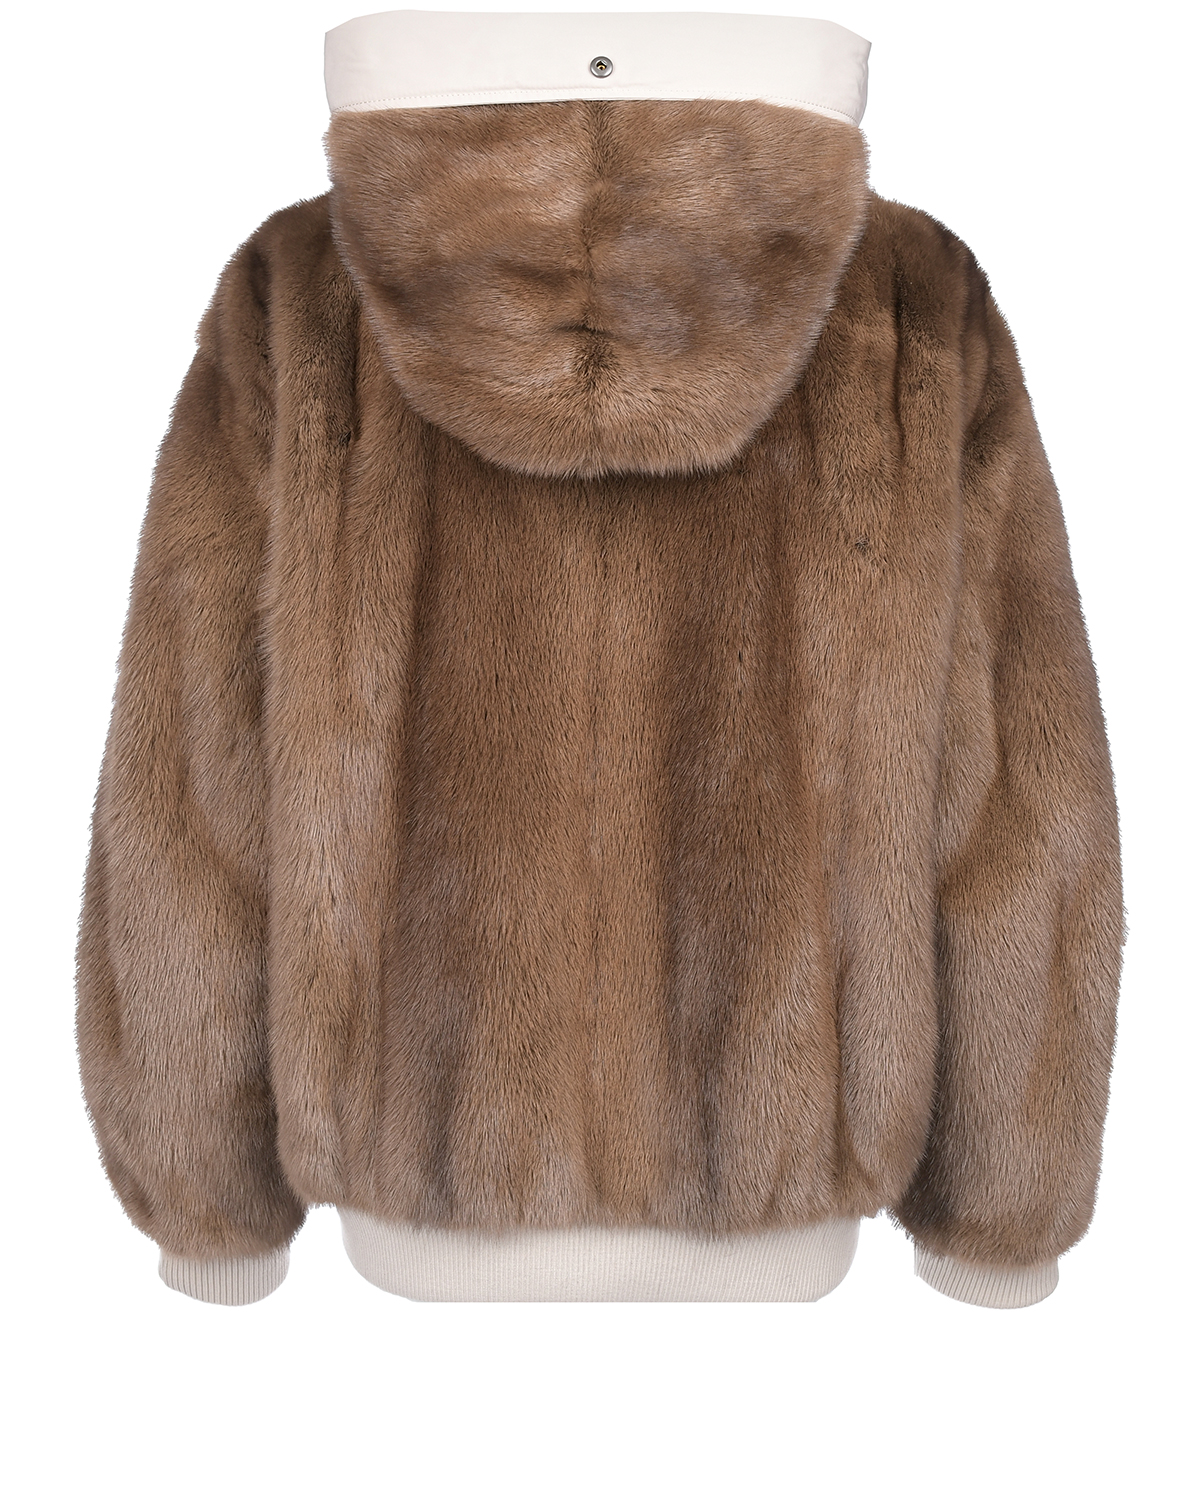 Двухсторонняя куртка с мехом норки Yves Salomon, размер 42, цвет коричневый - фото 4